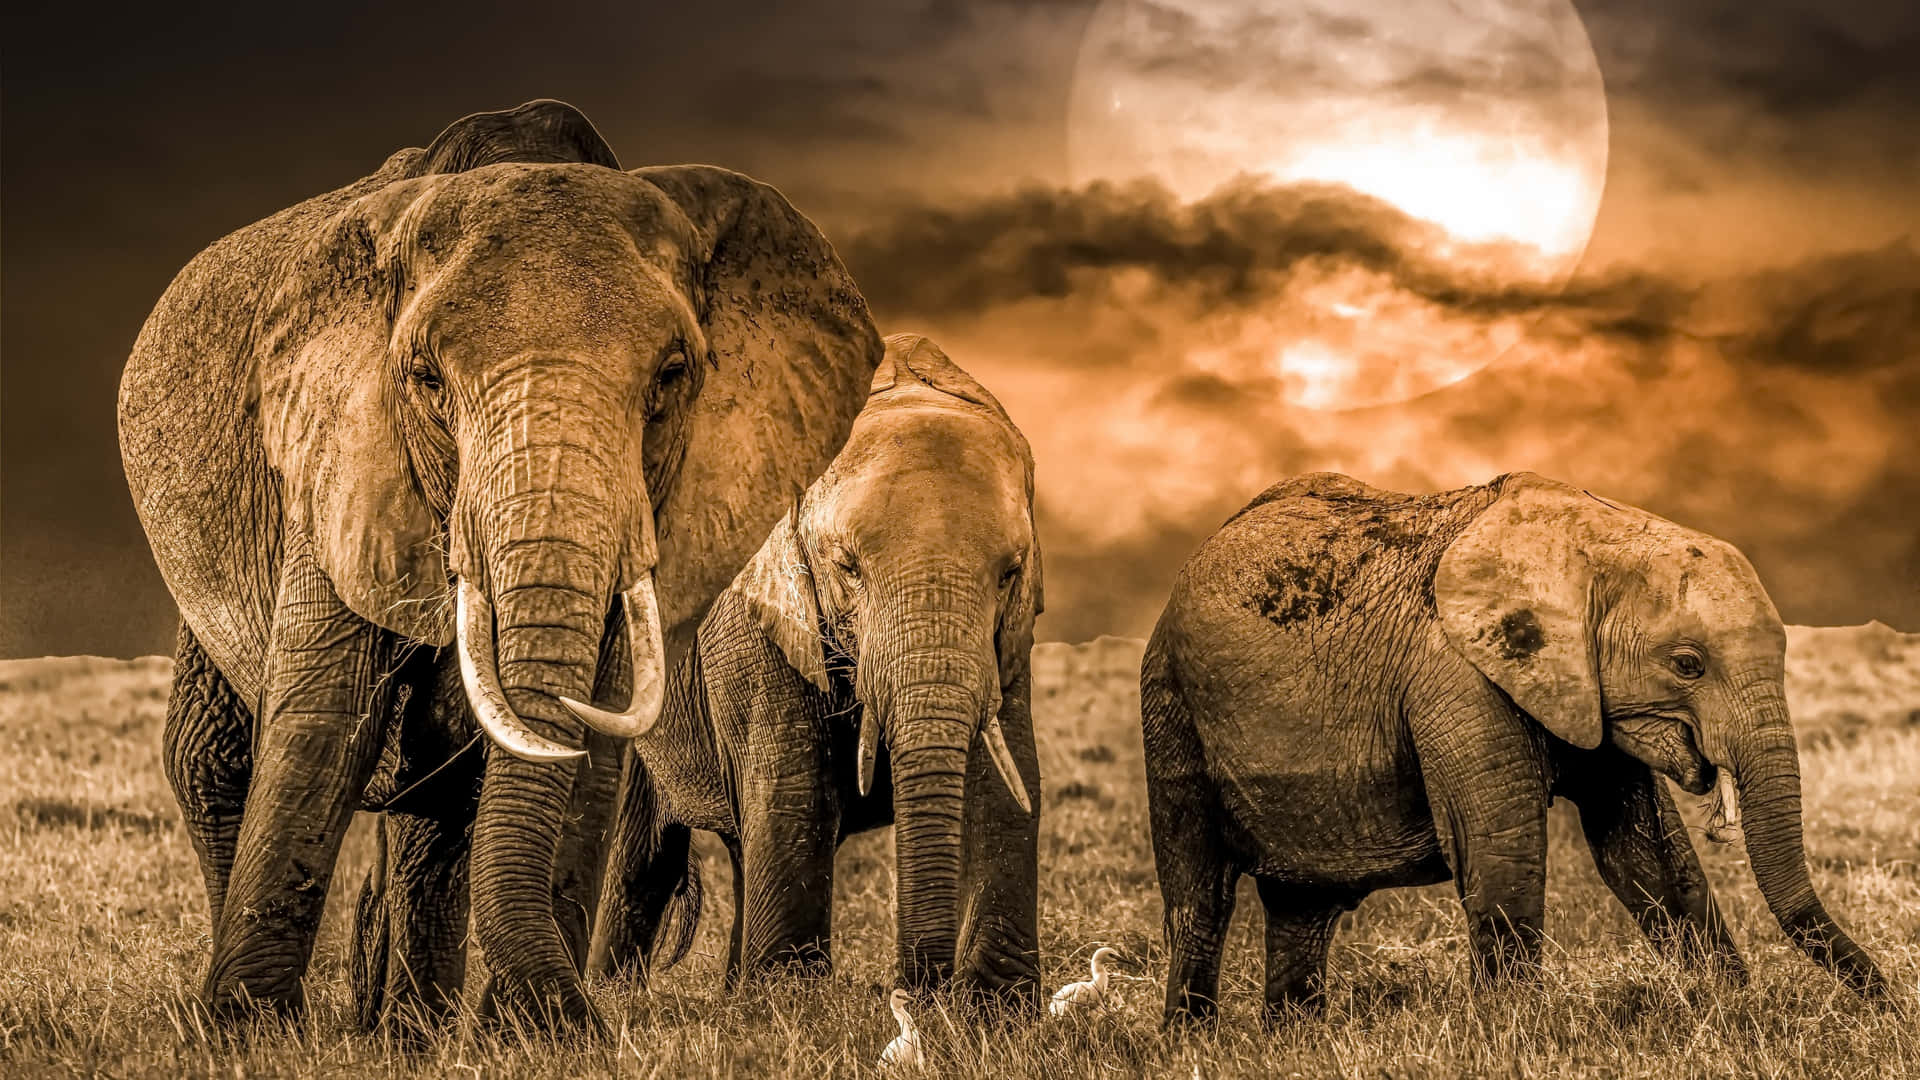 Imagenfascinante De Elefantes